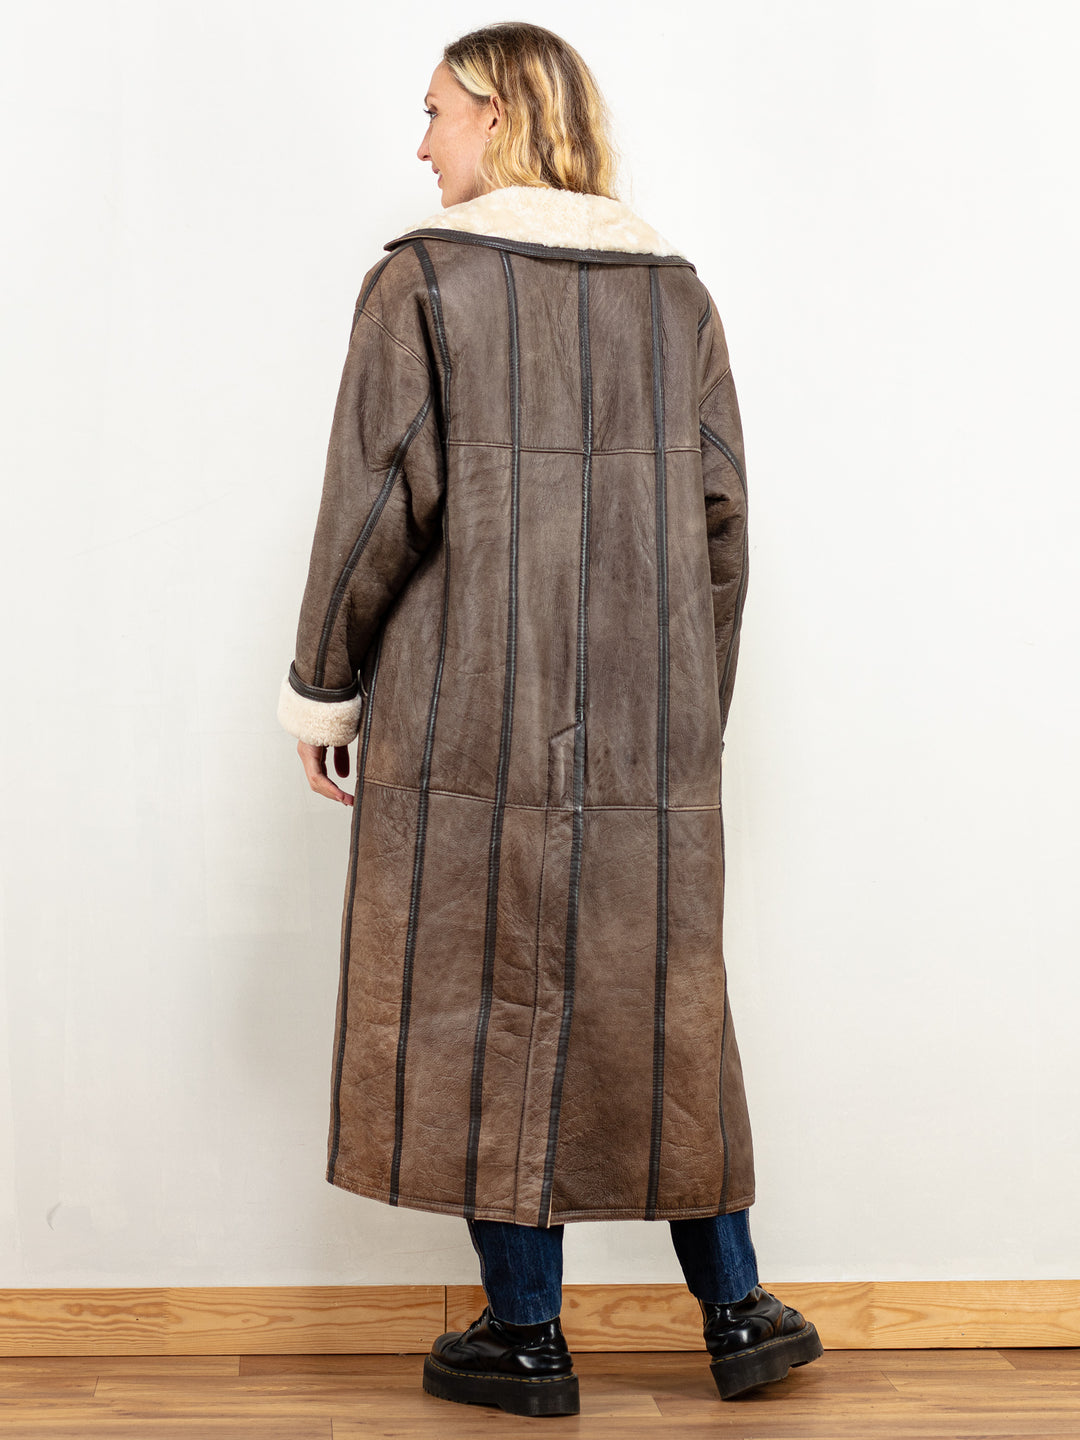 Penny Lane Coat vintage 70's women afghan sheepskin shearling beige brown winter longline coat oversized vintage outwear coat size large L